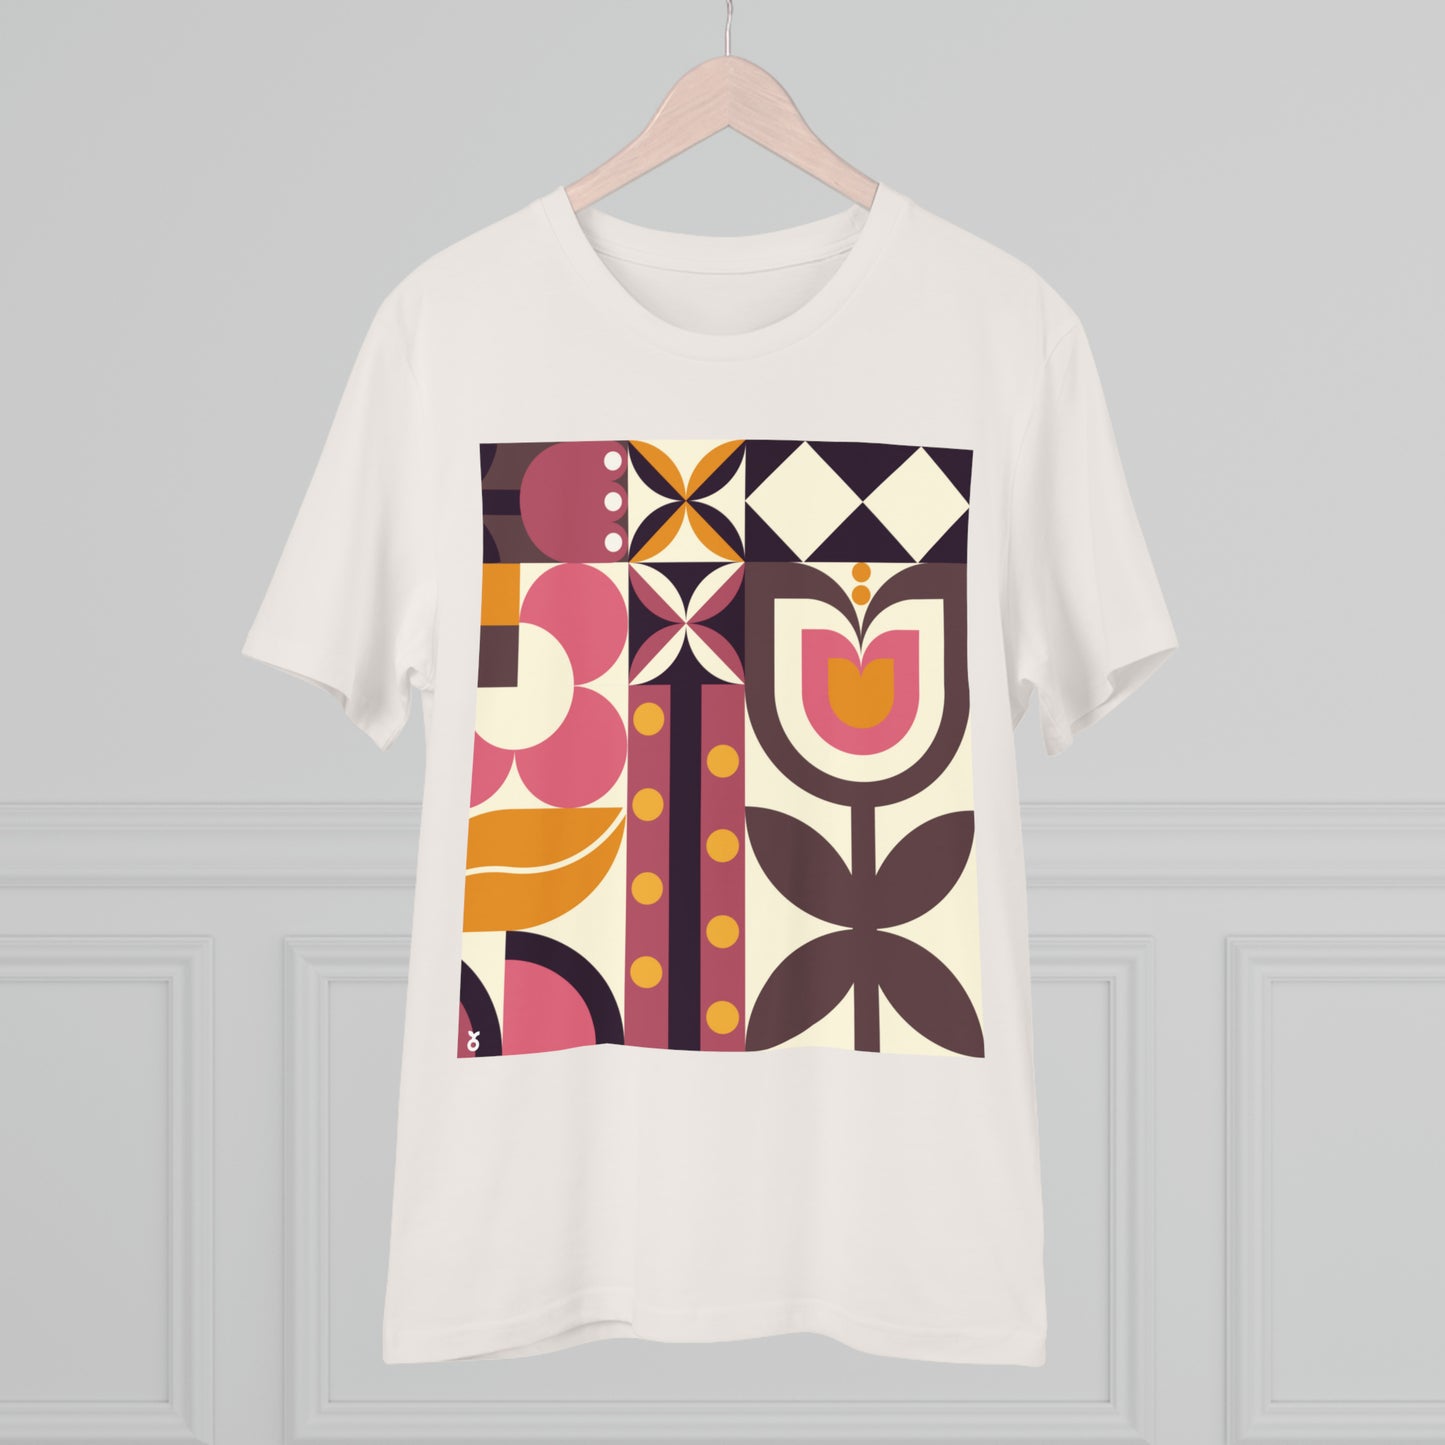 T-shirt in cotone organico Primavera Bauhaus - Unisex